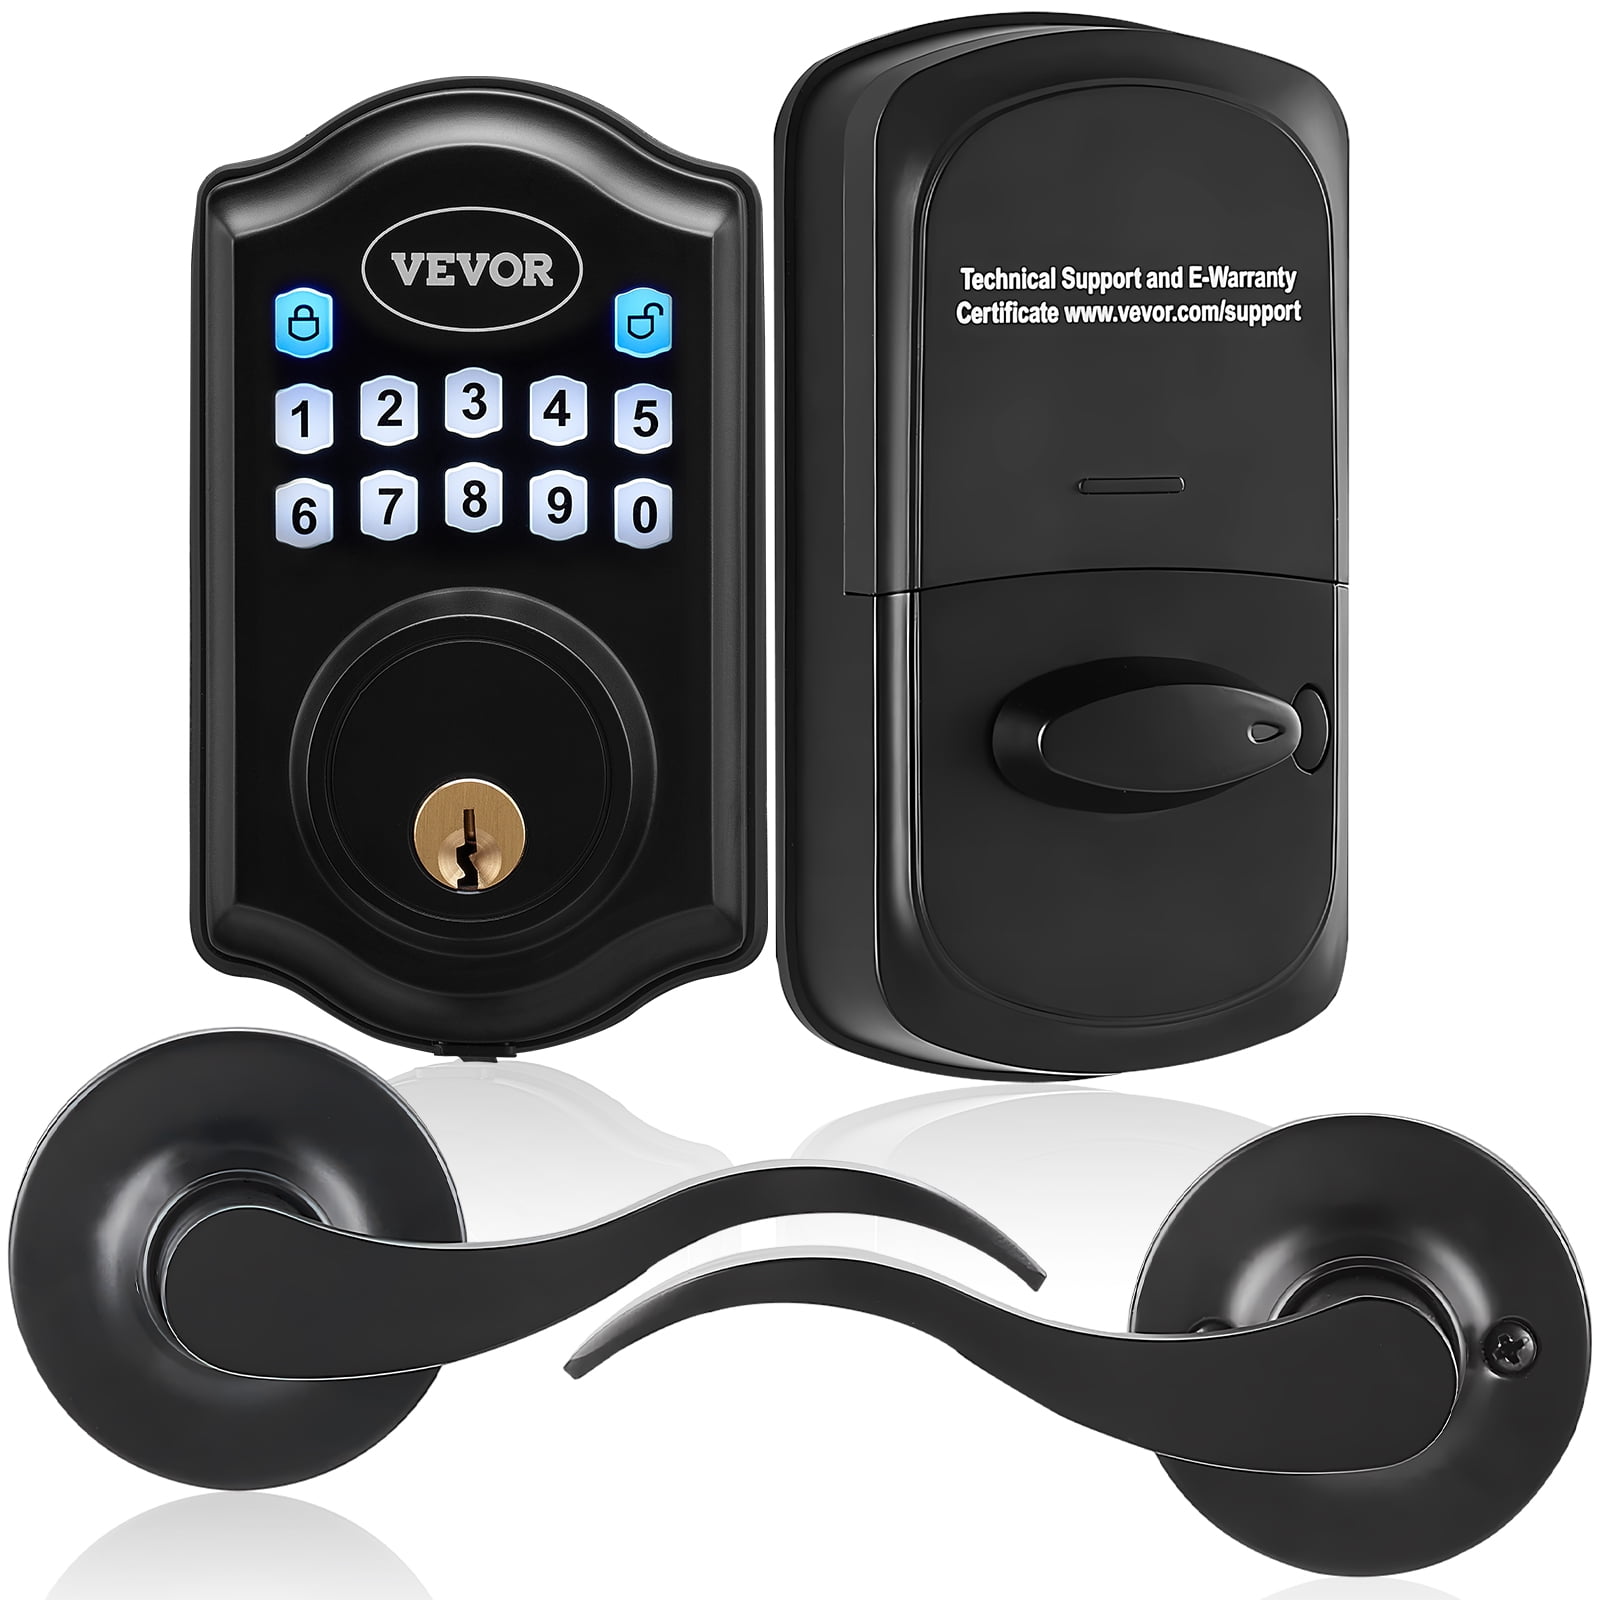 DOORWING® Portable Door Lock & Stopper for Pet & Child Proofing Doors